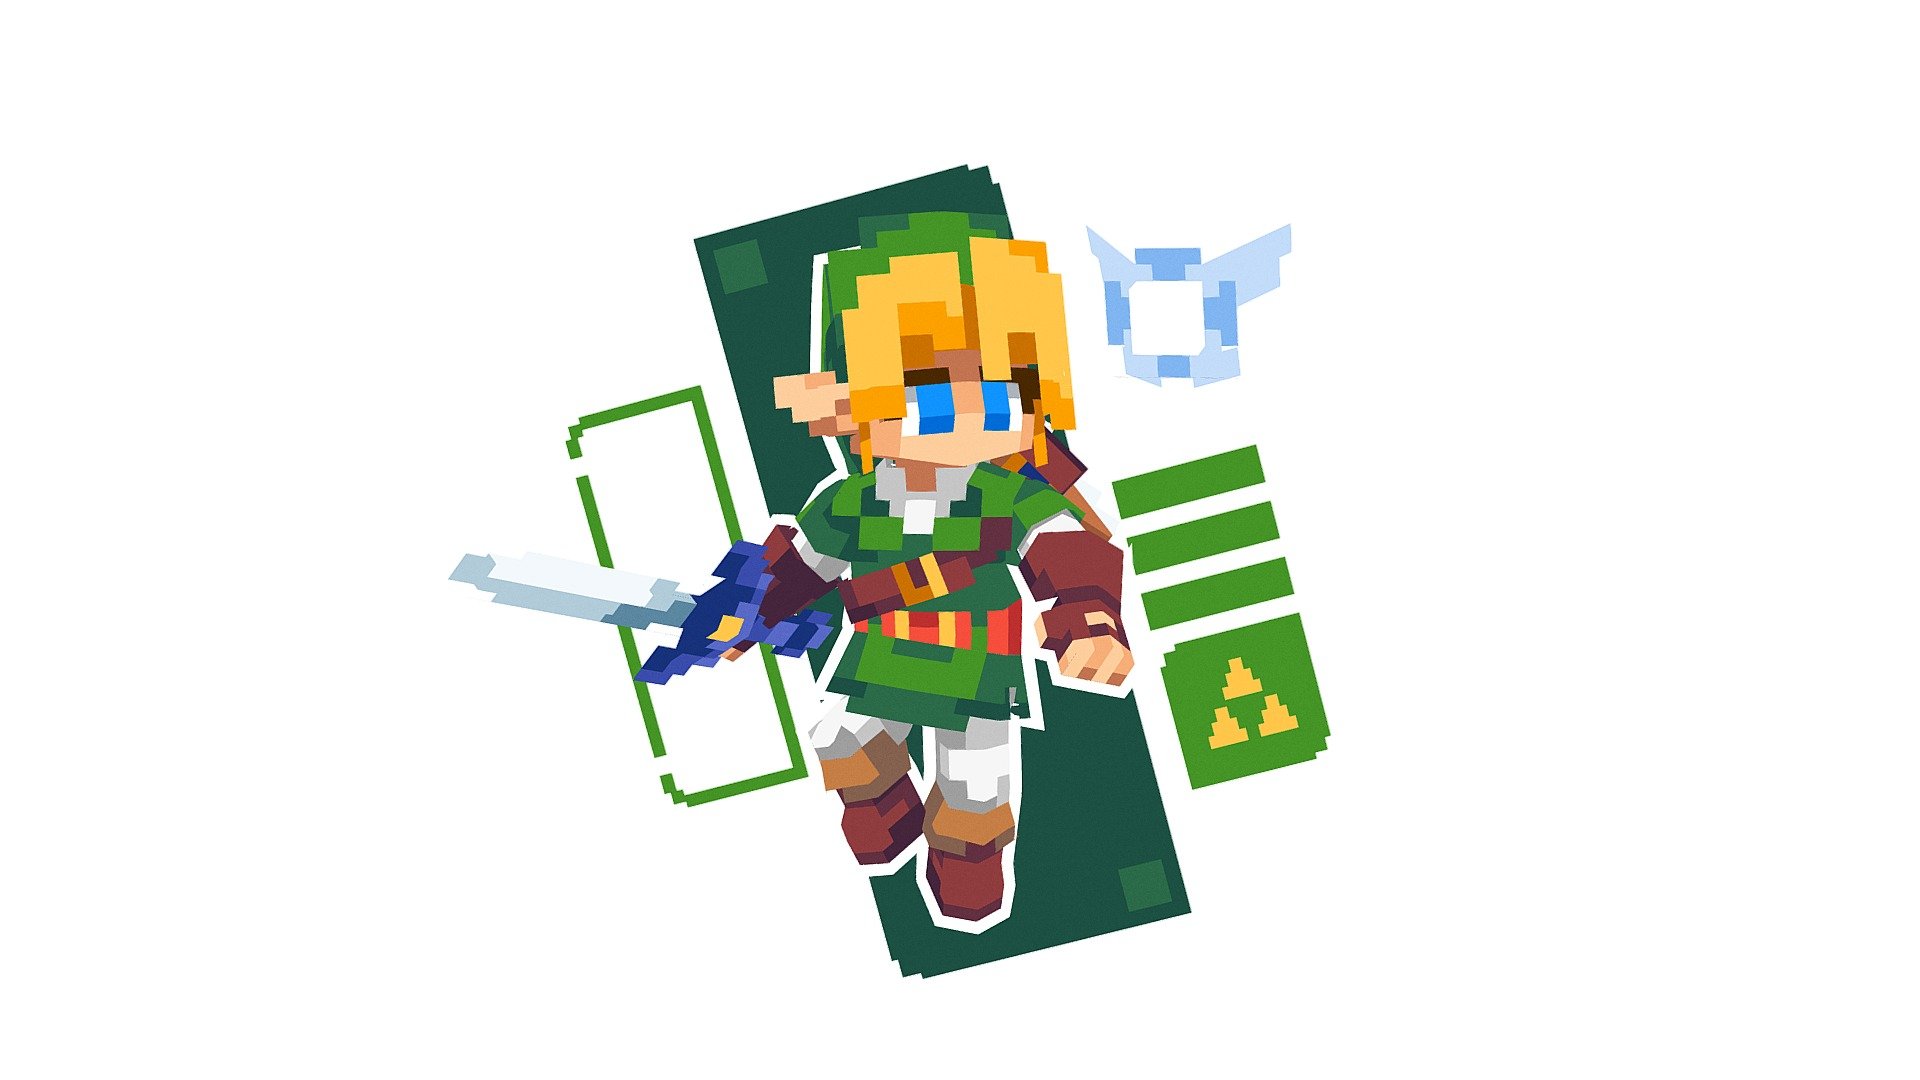 ArtStation - The Legend of Zelda - Link Pixel art